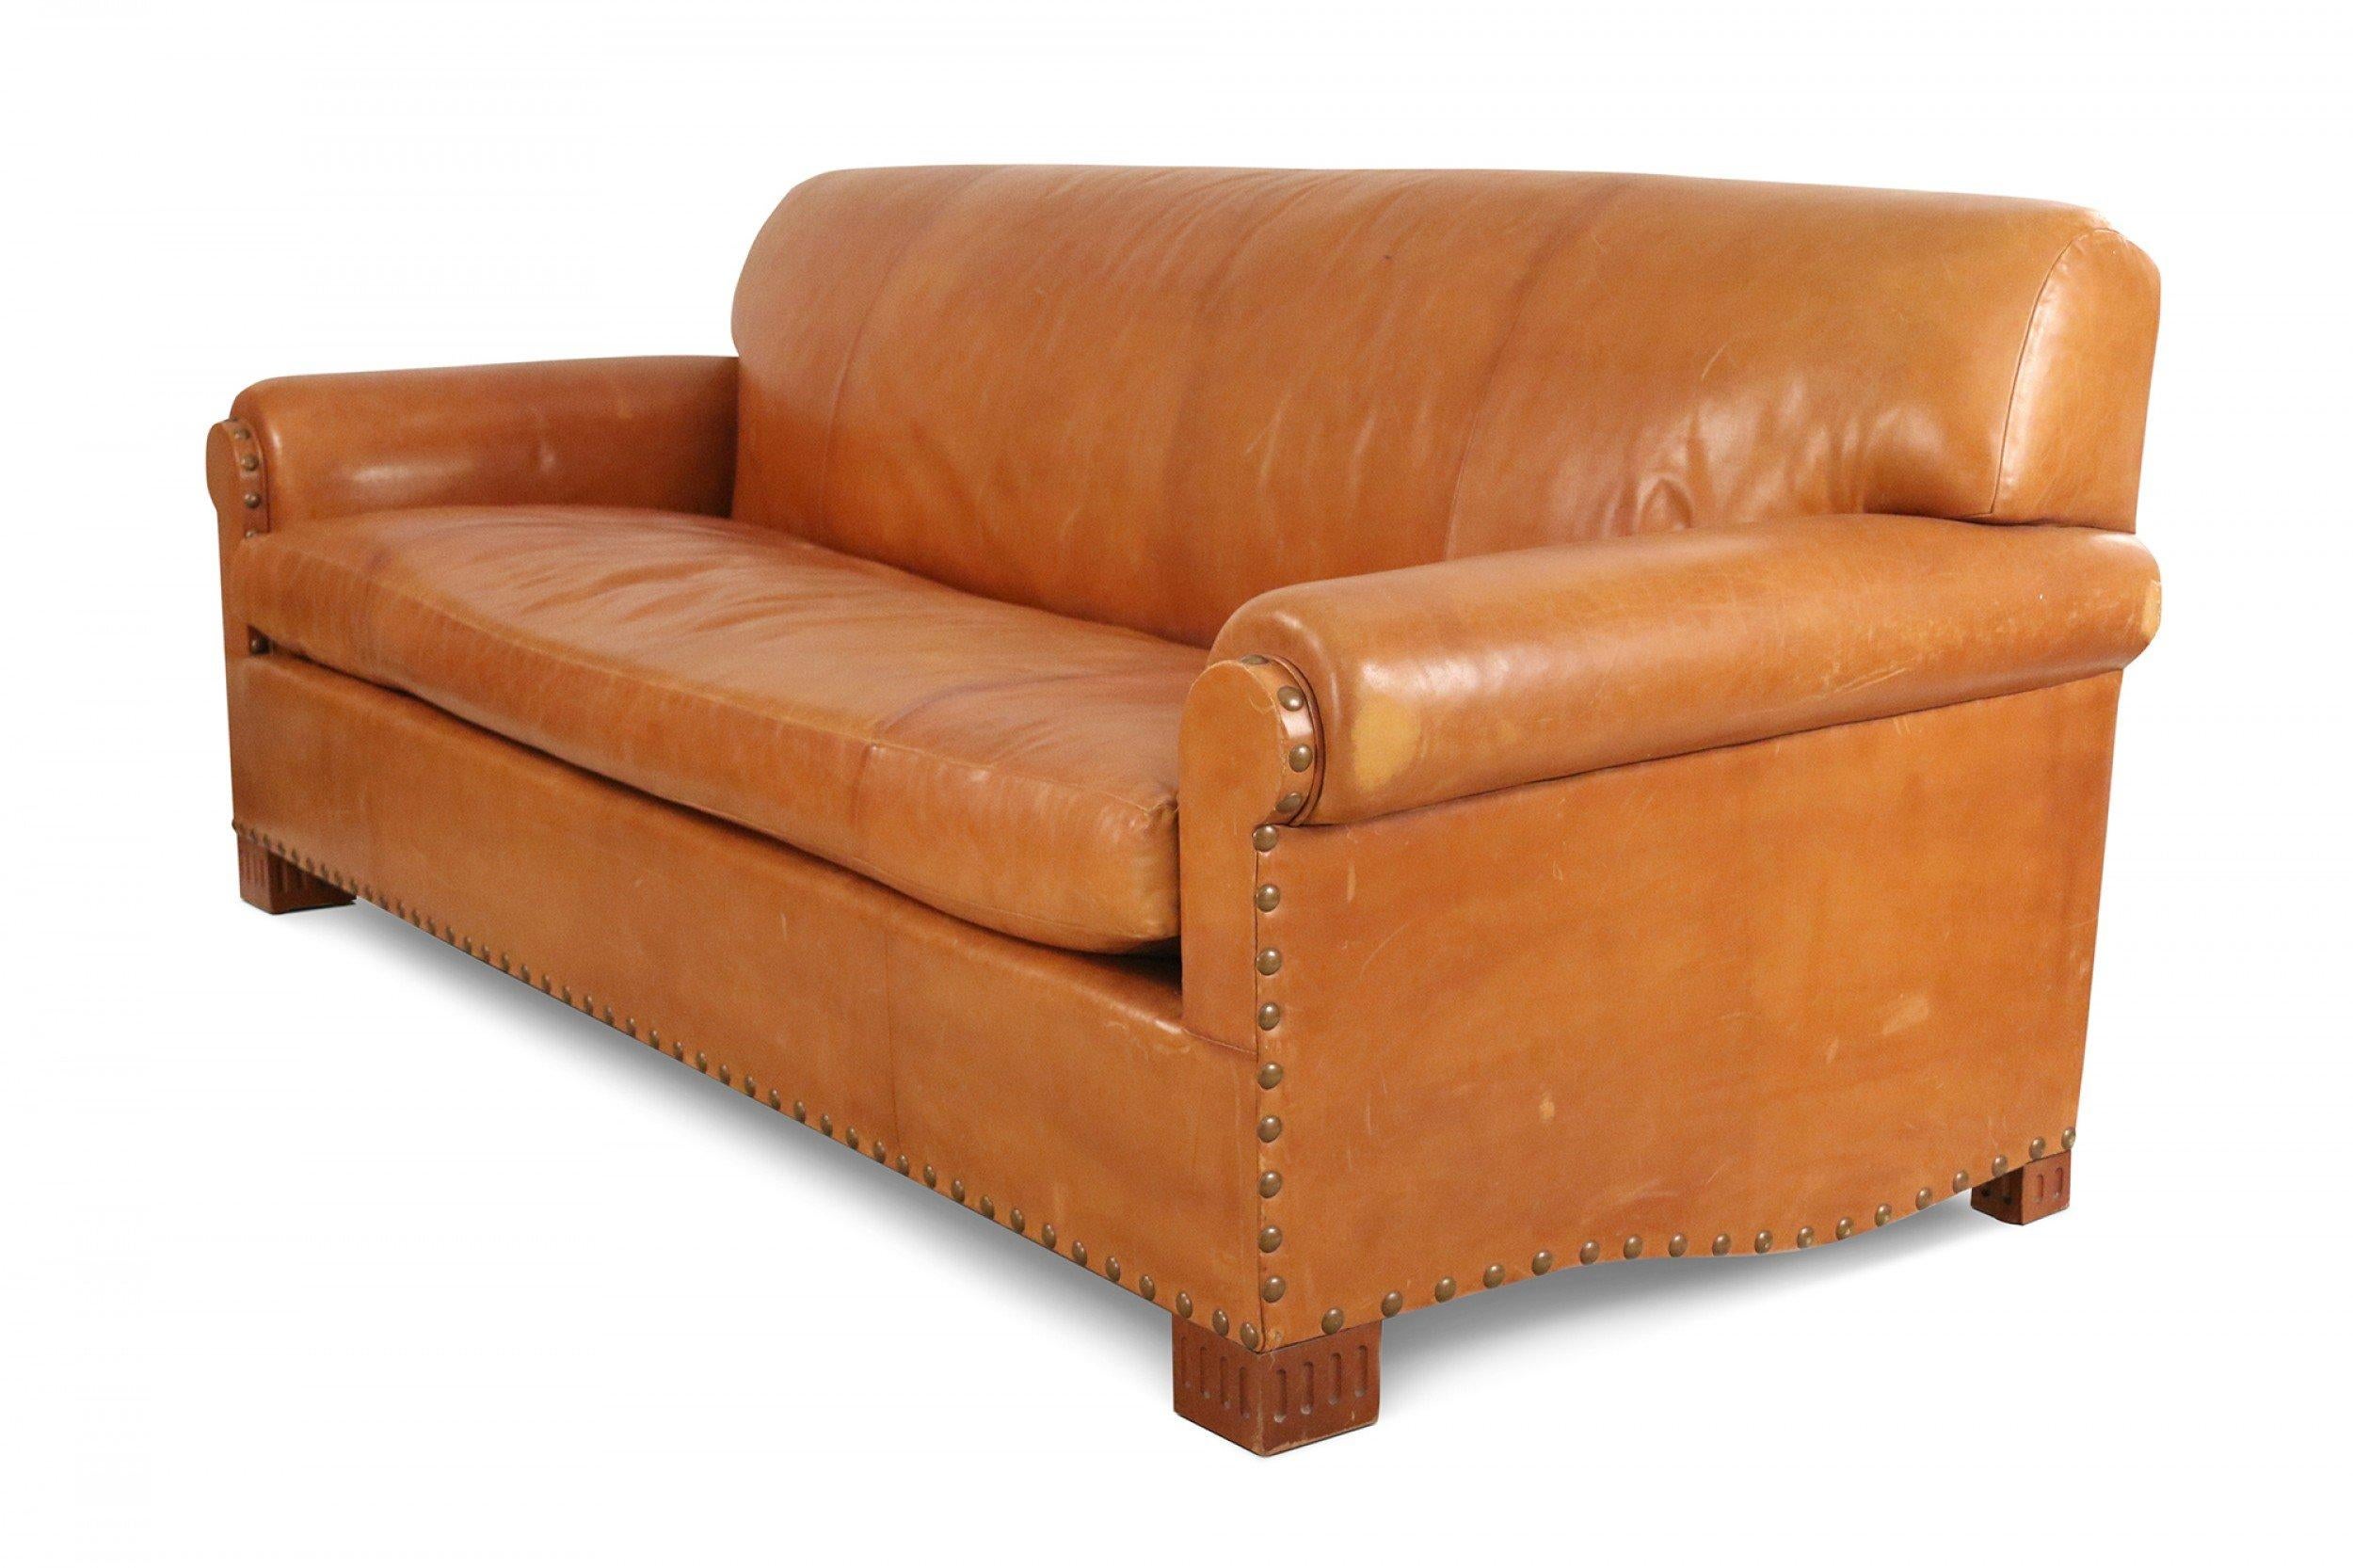 2 cushion leather sofa